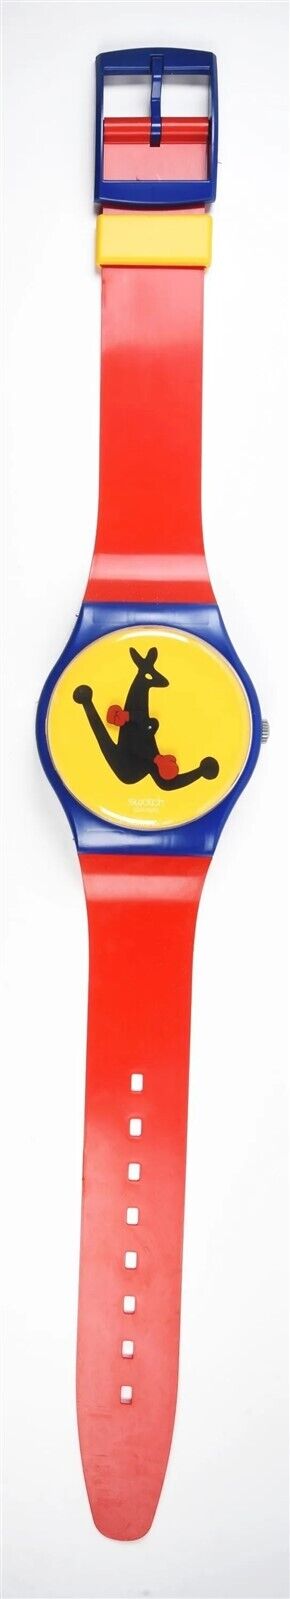 HUGE Swatch Watch BOXING Kangaroo MAXI MGN163 Wall Clock 83